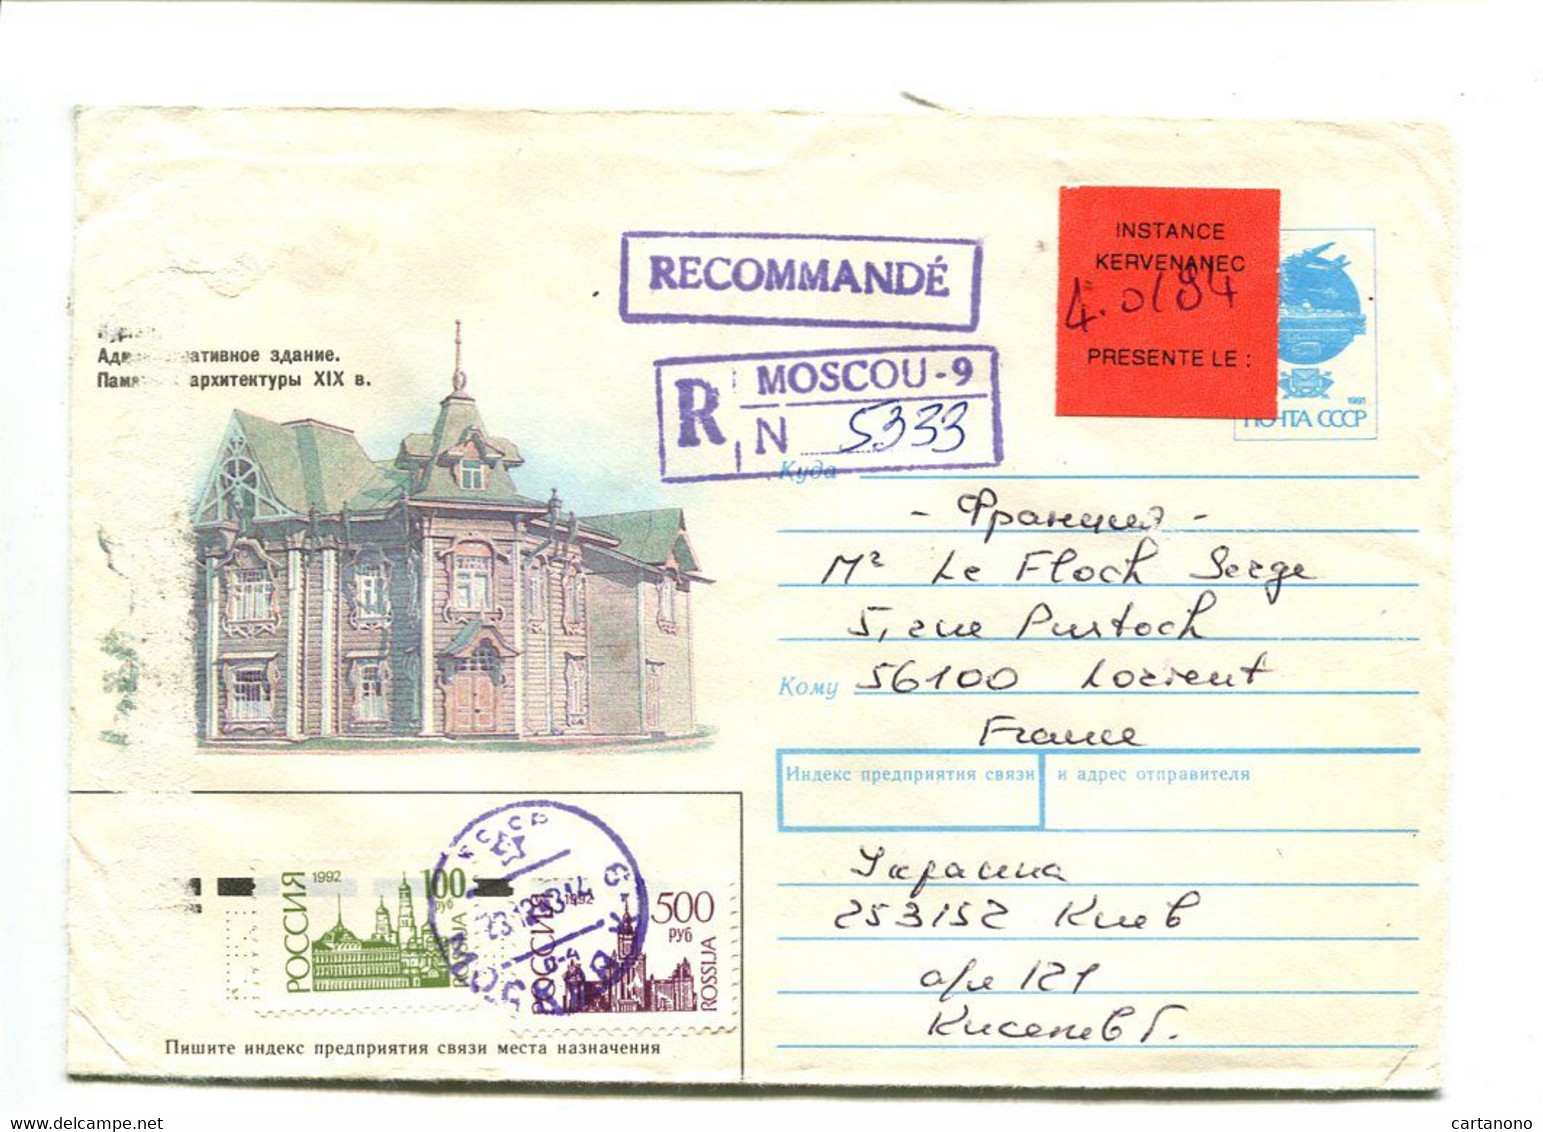 RUSSIE Moscou 1994 - Entier Postal Avec Complément D'affranchissement Pour Recommandation + Etiquette "Instance..." - Briefe U. Dokumente